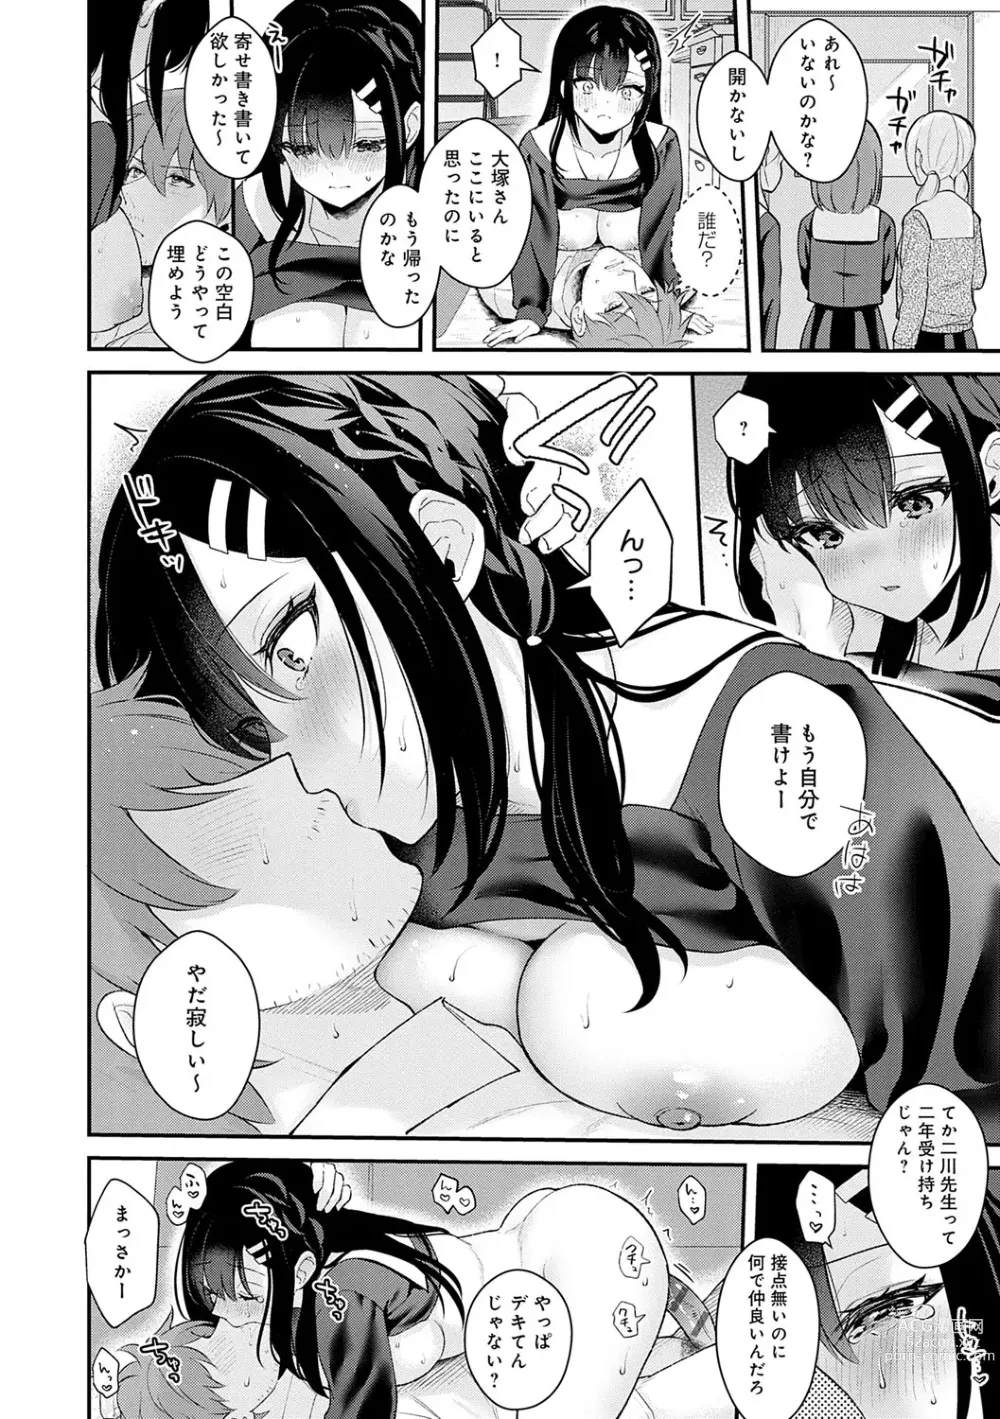 Page 197 of manga Kanojo Face